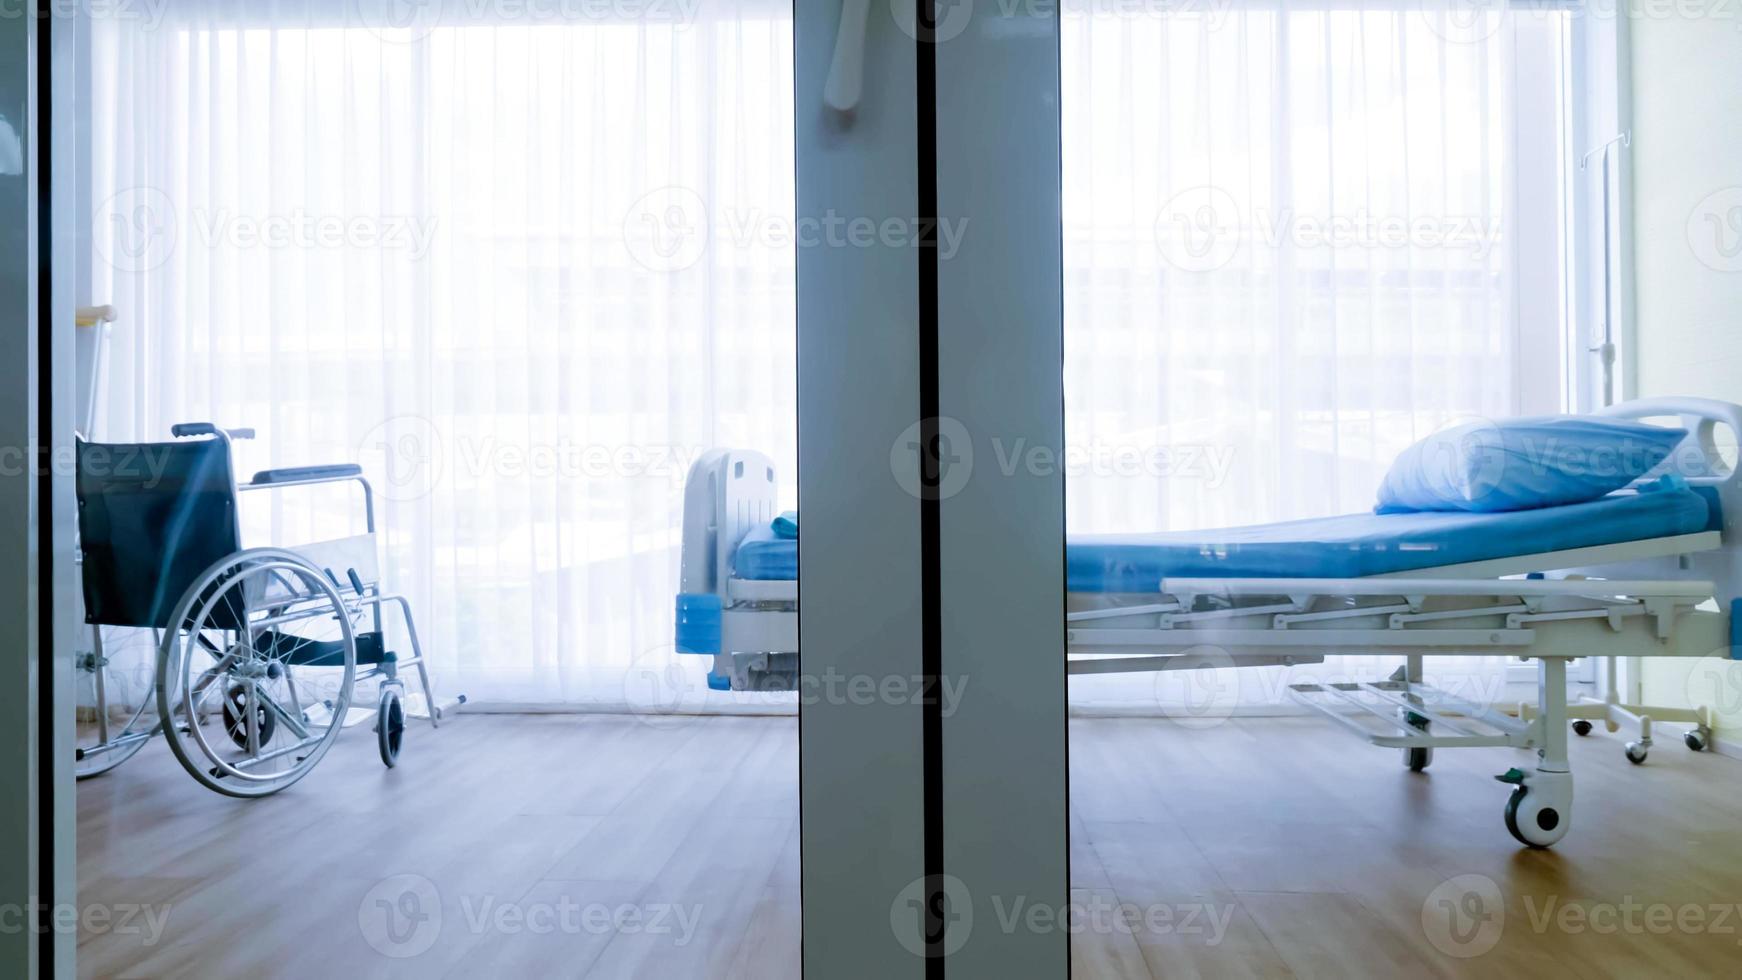 quarto para paciente em um hospital, cama vazia e cadeira de rodas na enfermaria do hospital. foto